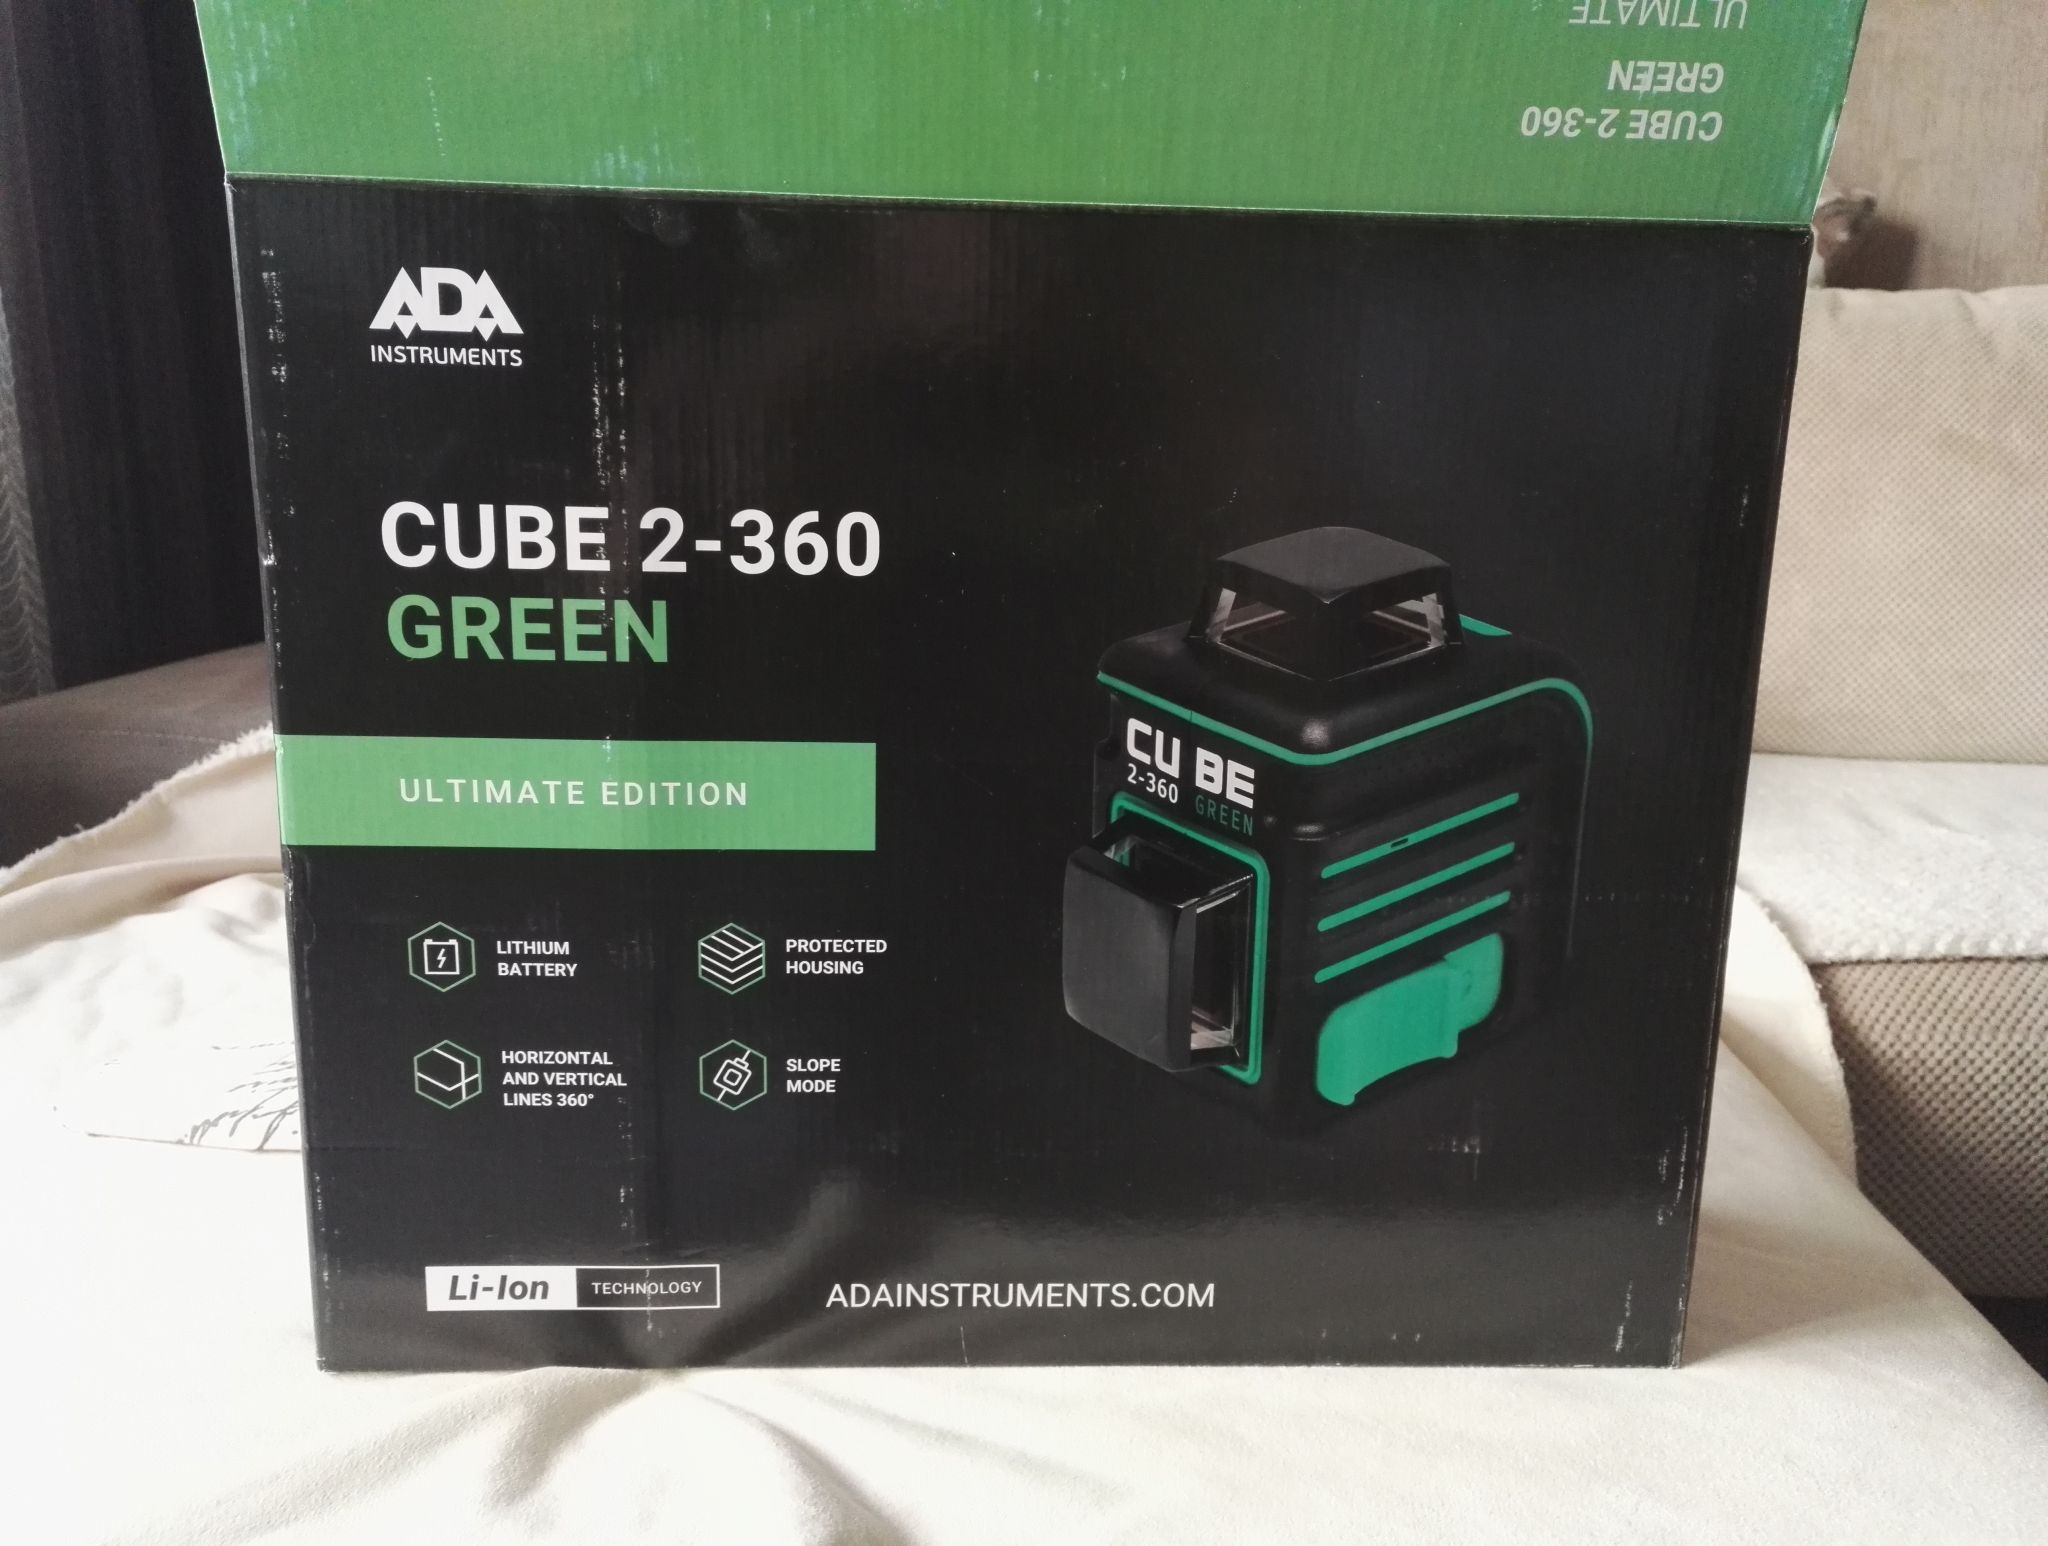 Лазерный уровень cube 360 green. Ada Cube 2-360 Green professional Edition а00534. Ada Cube 2-360 Green Ultimate Edition. Лазерный уровень ada Cube 3-360 Green Ultimate Edition а00569. Лазерный уровень Cube Green 3-360 515nm Power 1.0MW.